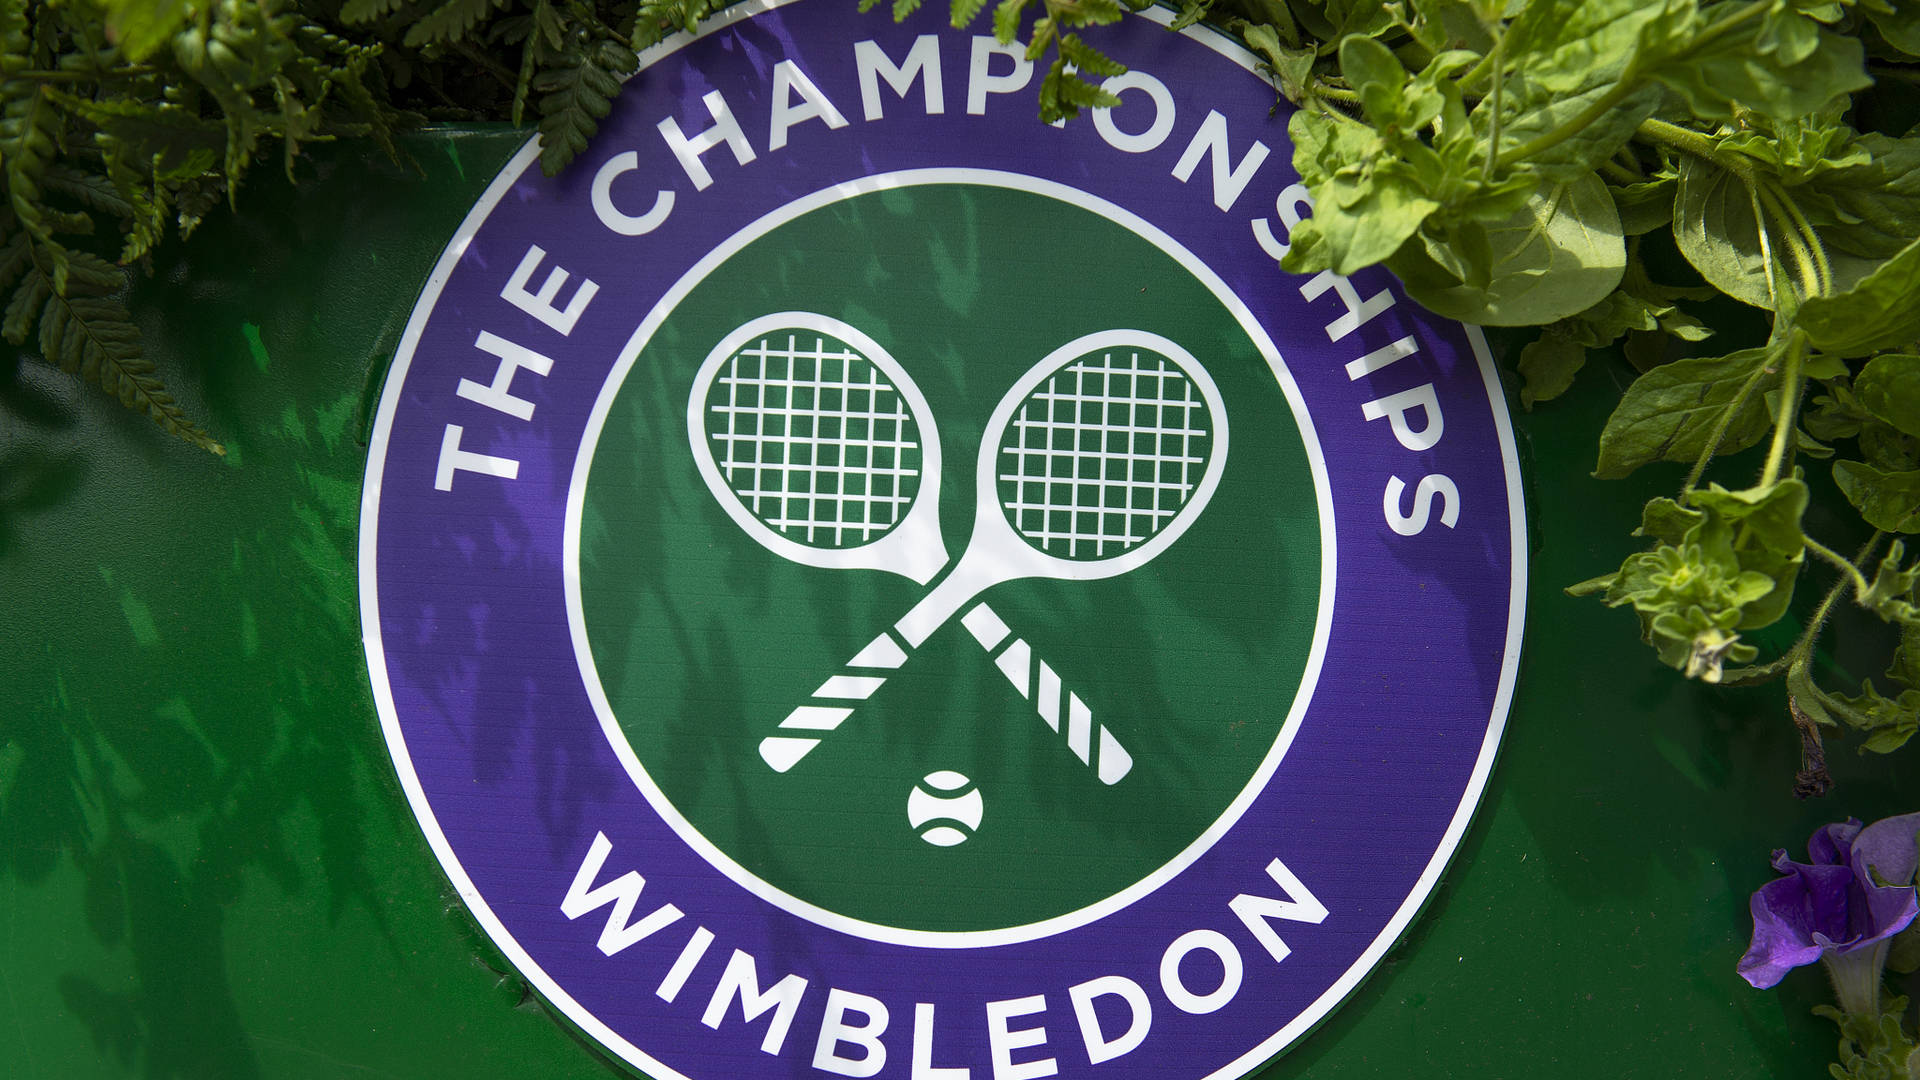 Wimbledon Logo With White Tennis Racket